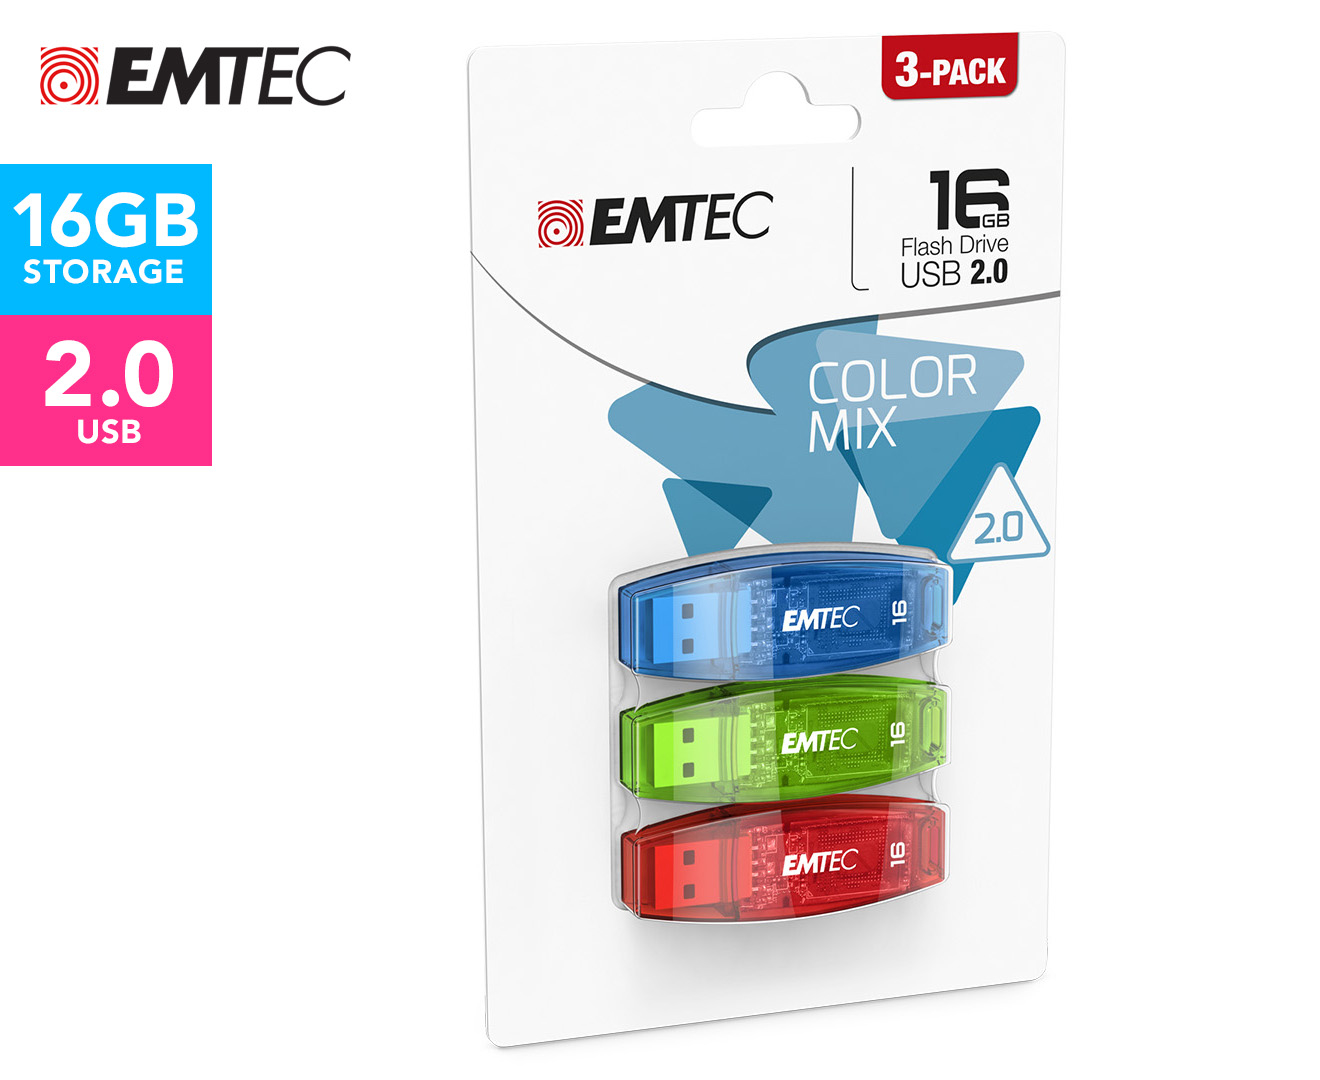 EMTEC 3-Pack C410 Colour Mix 16GB USB 2.0 Flash Drive